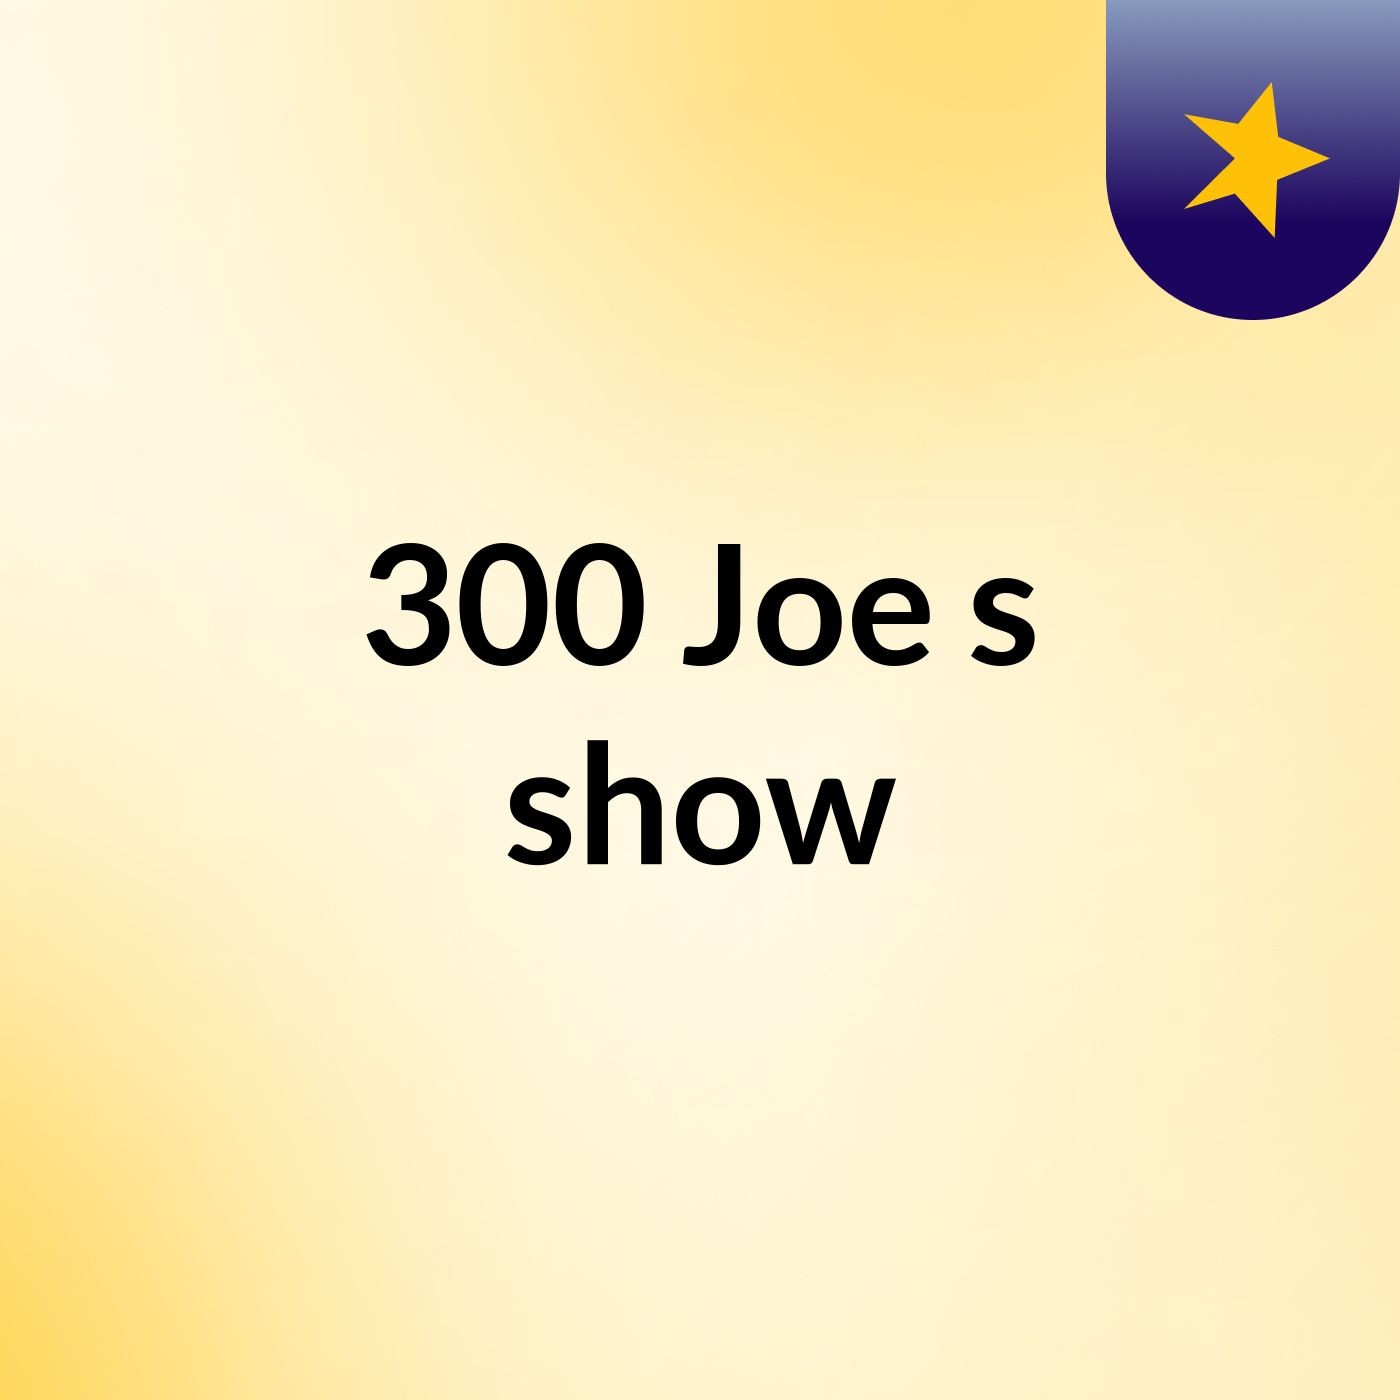 300 Joe's show